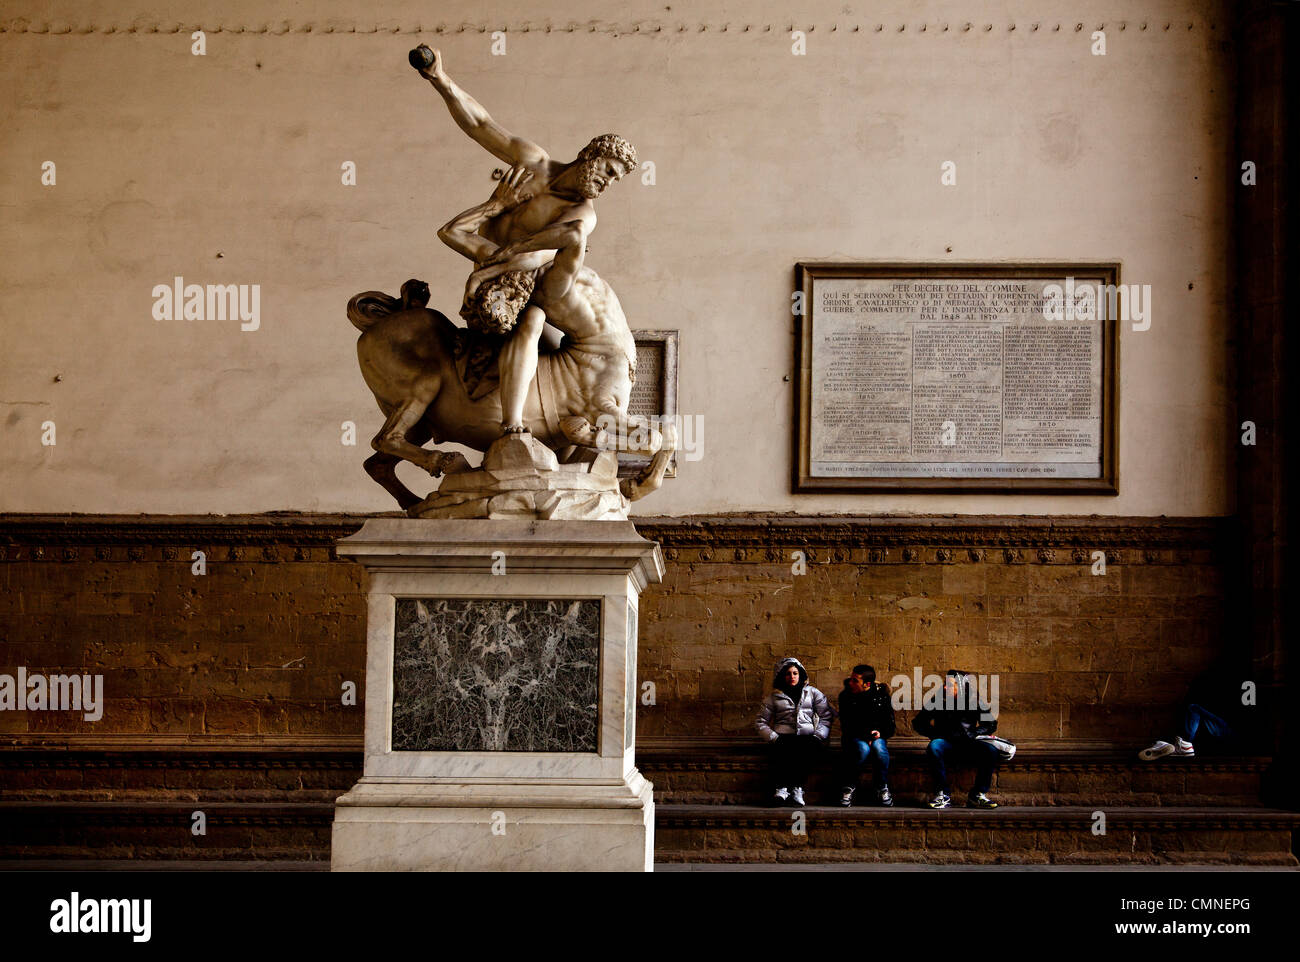 Tourists visiting Romano Greek statues in the Piazza della Signoria, Florence. Stock Photo